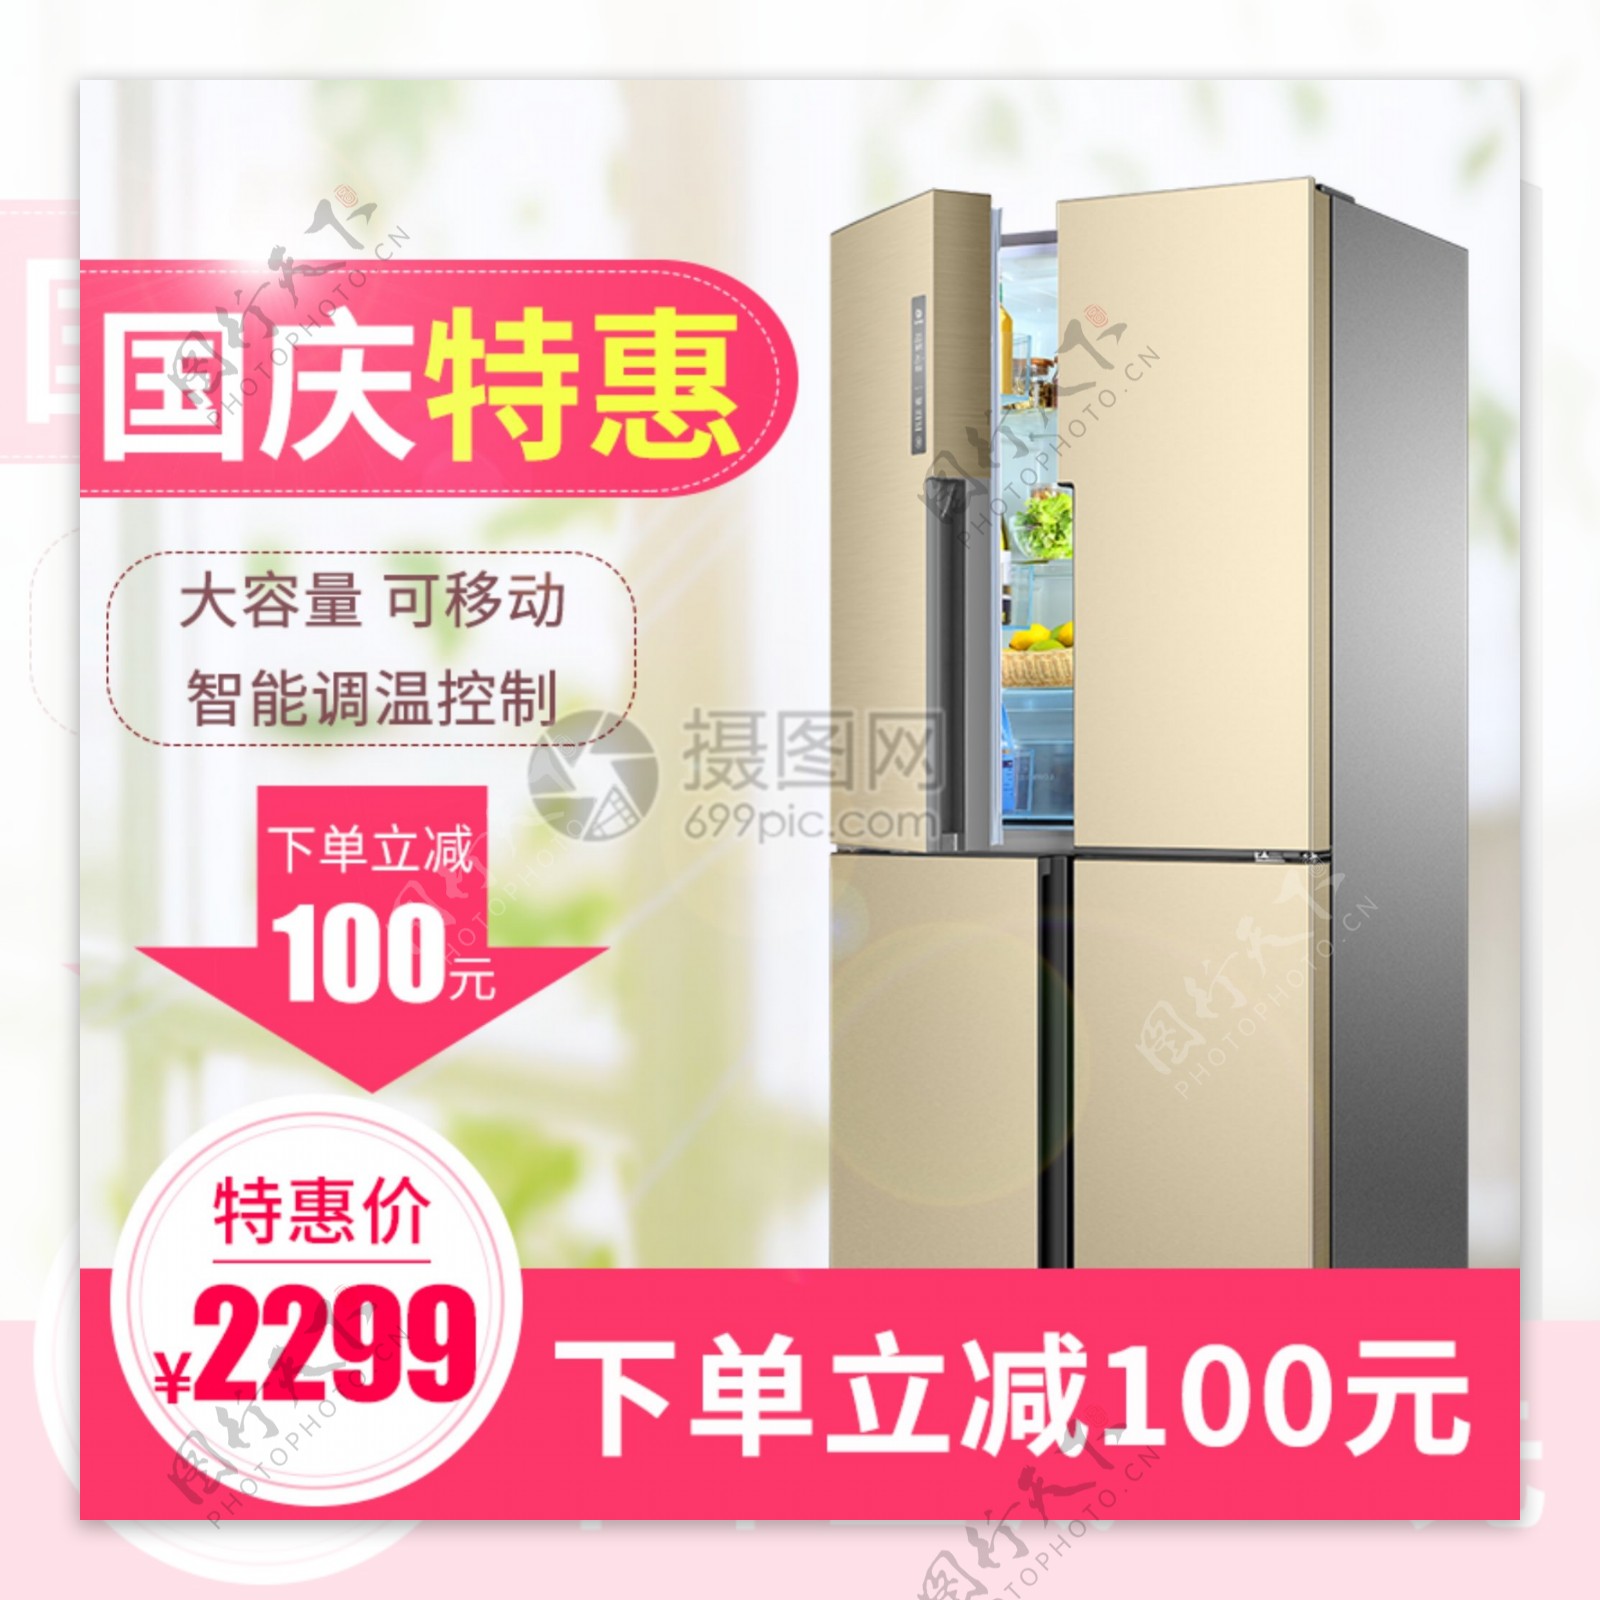 国庆特惠冰箱促销家电淘宝主图